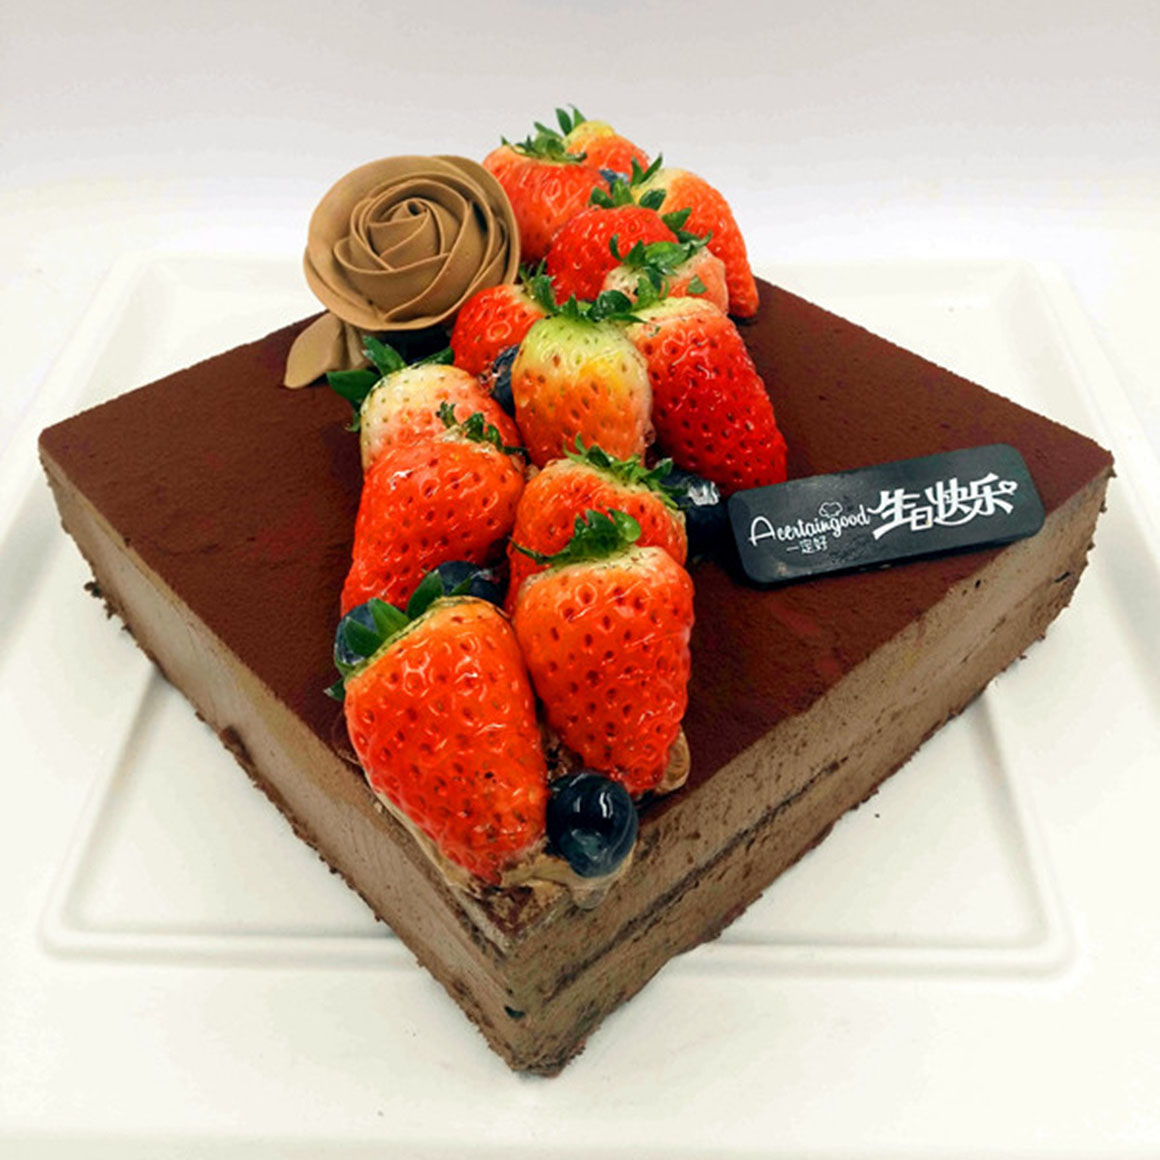 草莓幕斯蛋糕